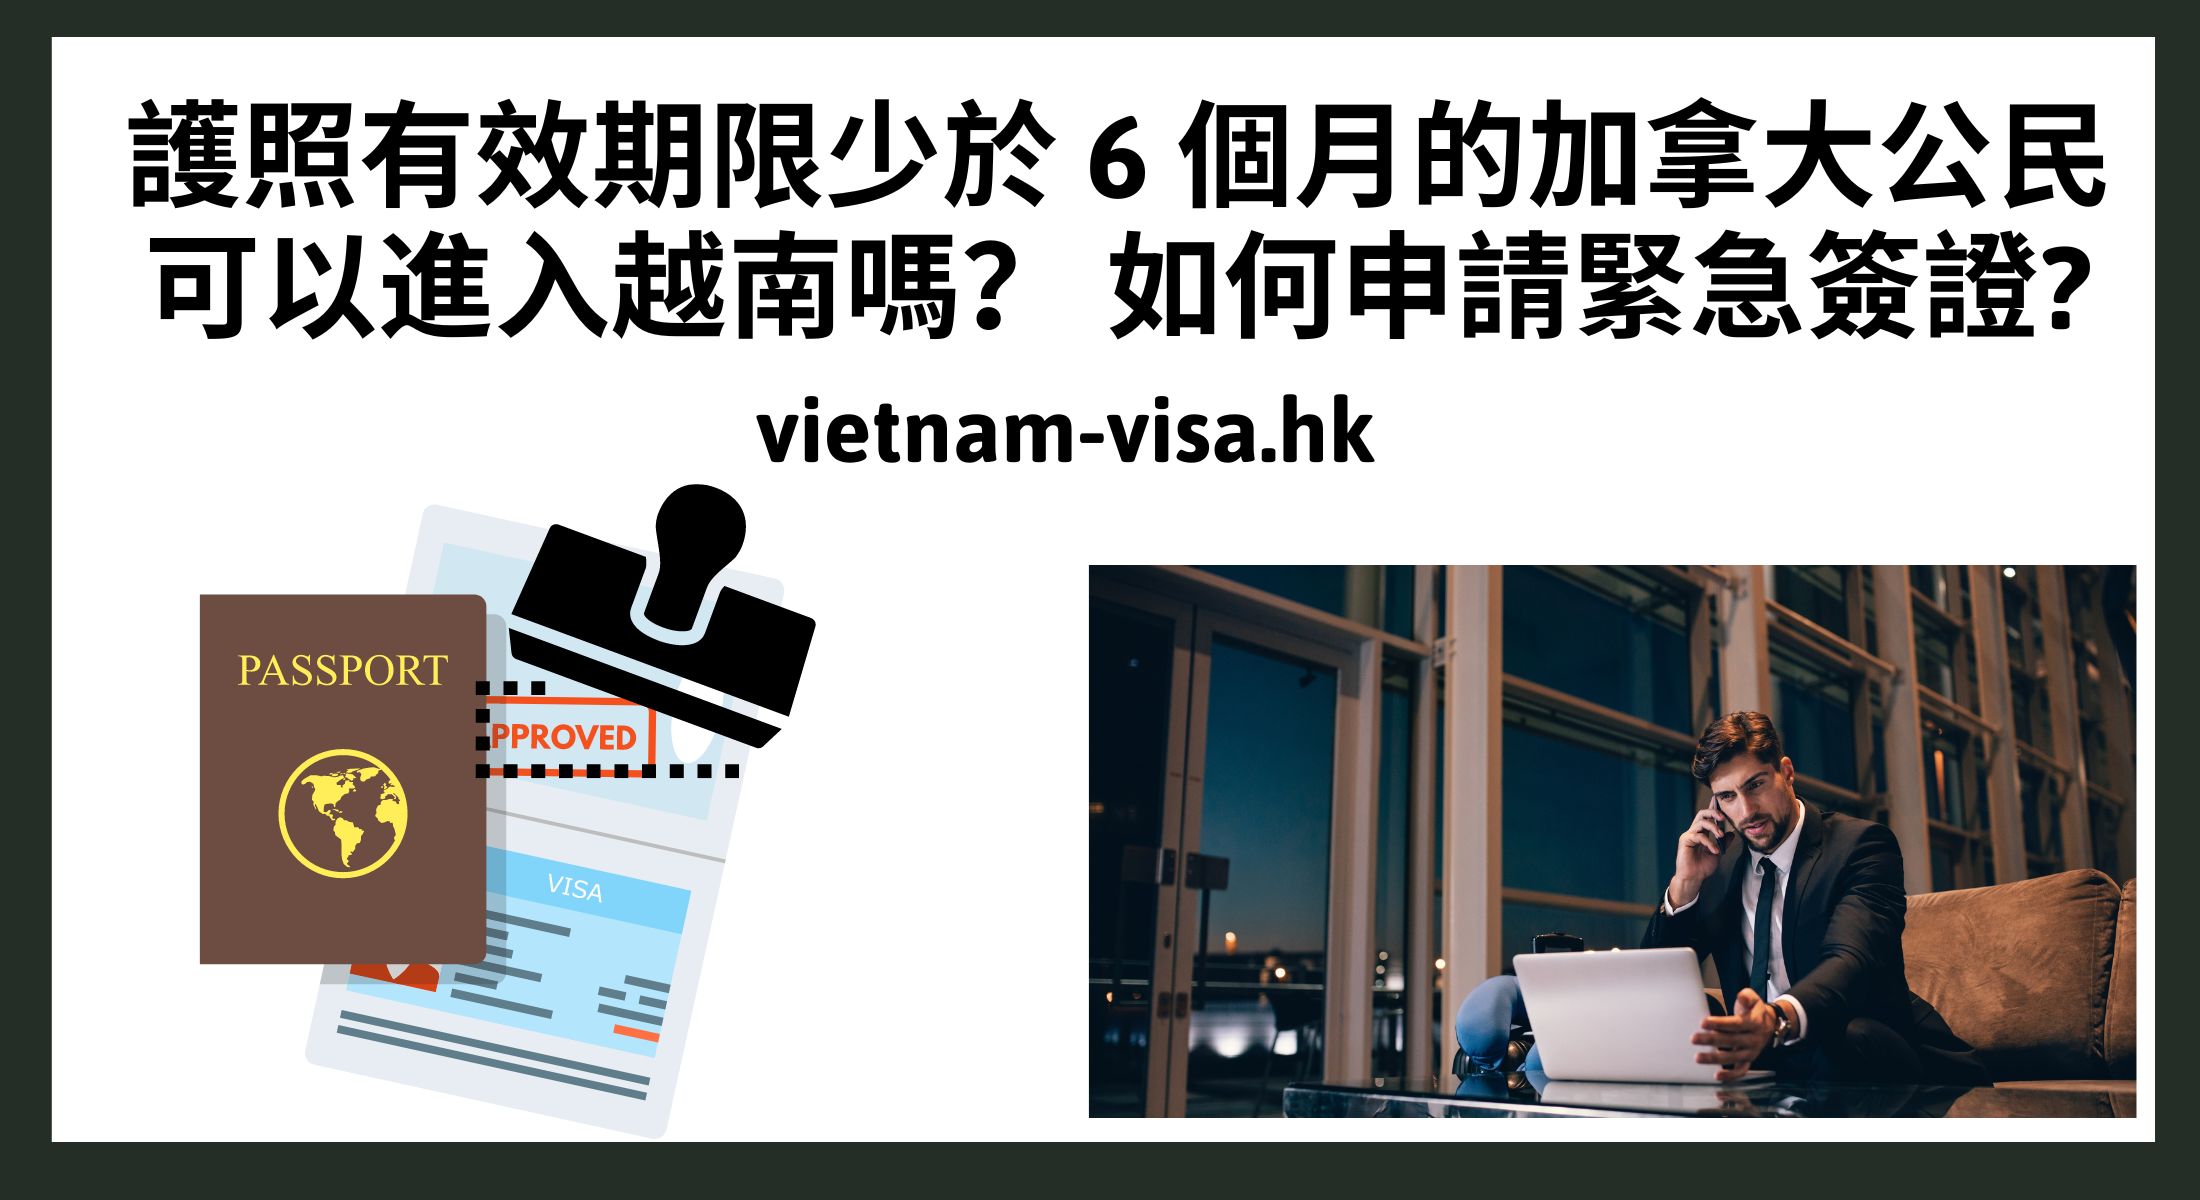 護照有效期限少於 6 個月的加拿大公民可以進入越南嗎？ 如何申請緊急簽證?